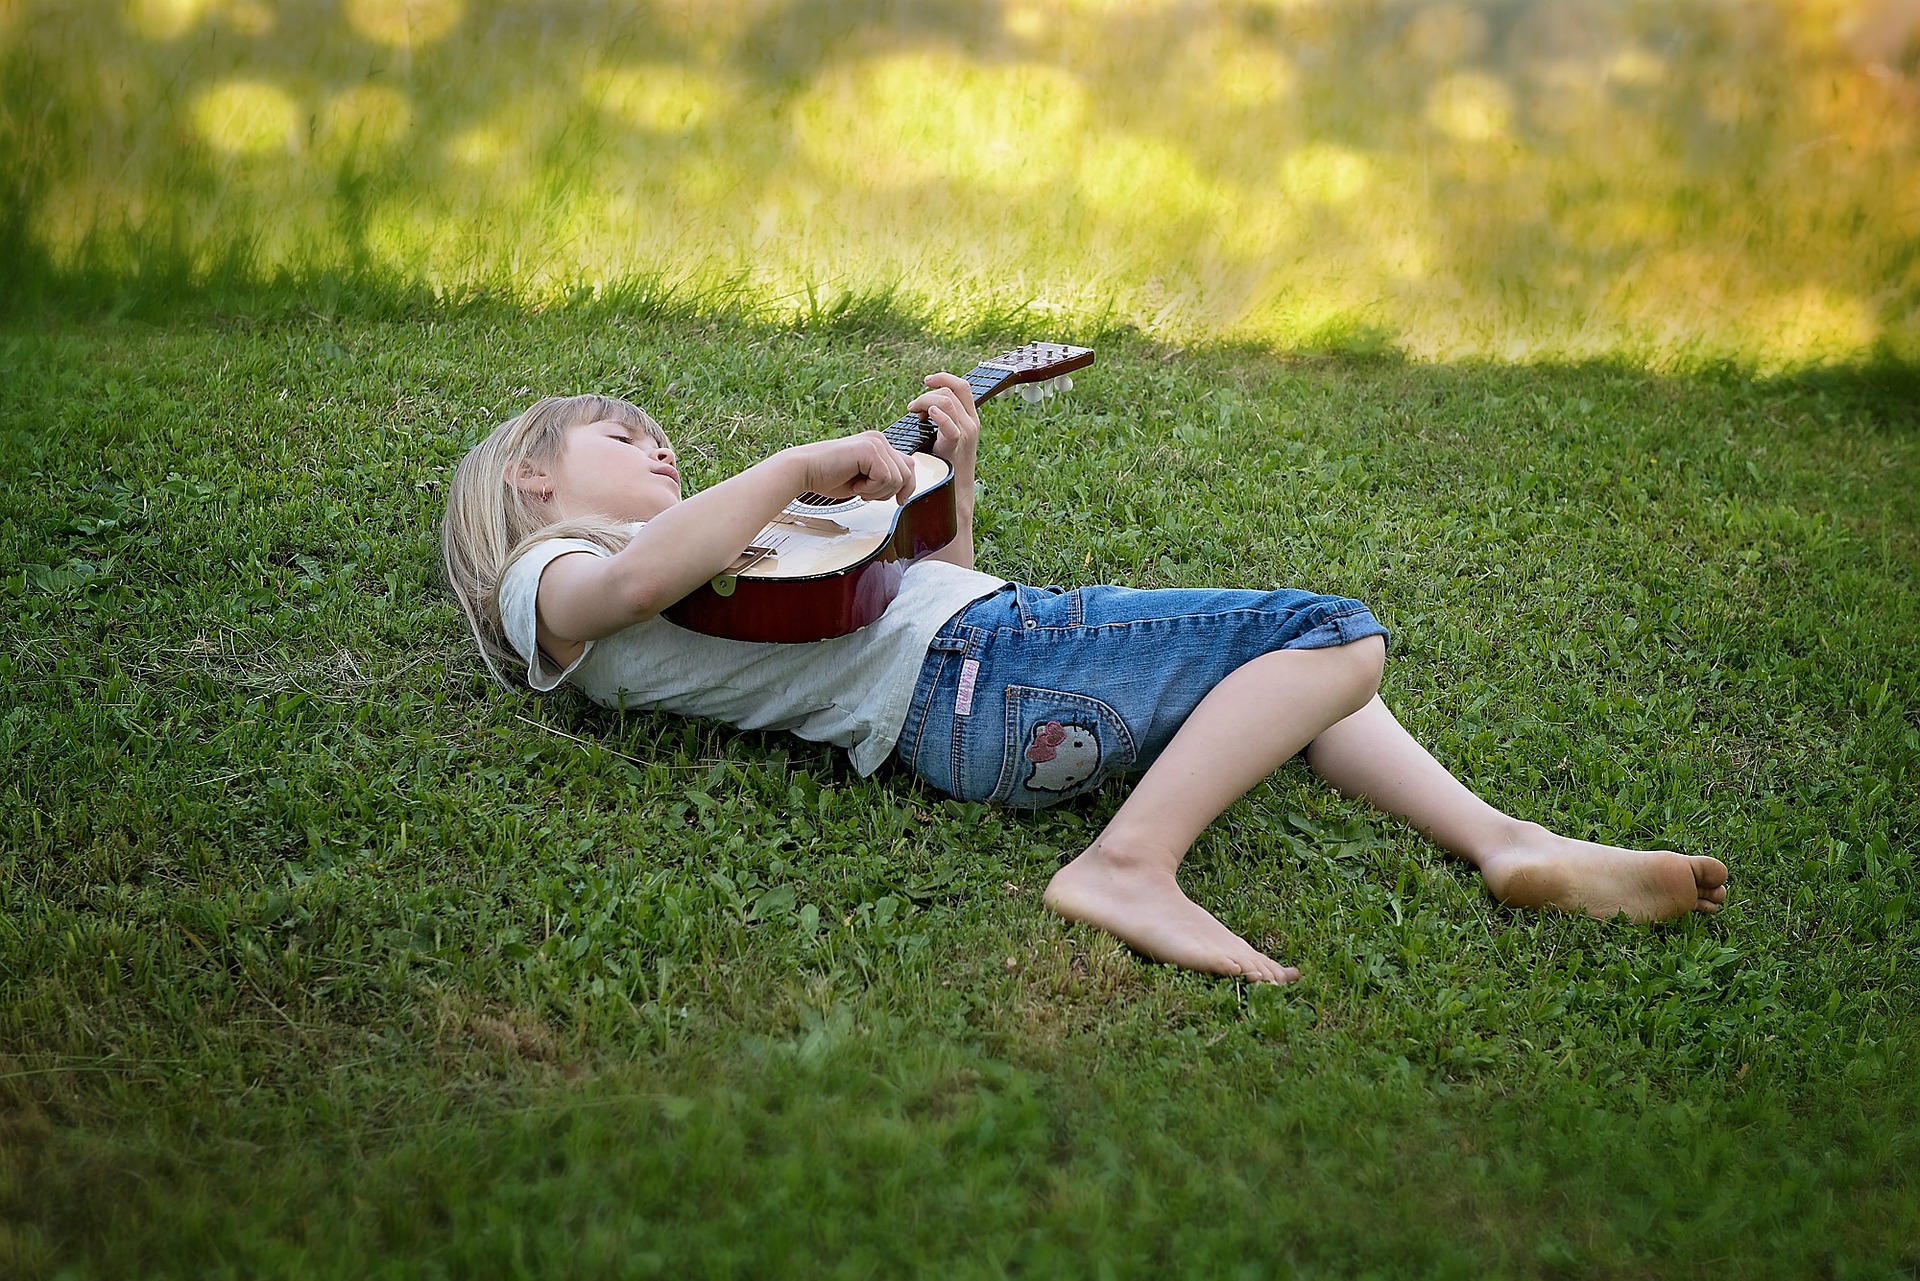 Kinderliedjes spelen op de gitaar? De leukste kinderliedjes voor je kind!